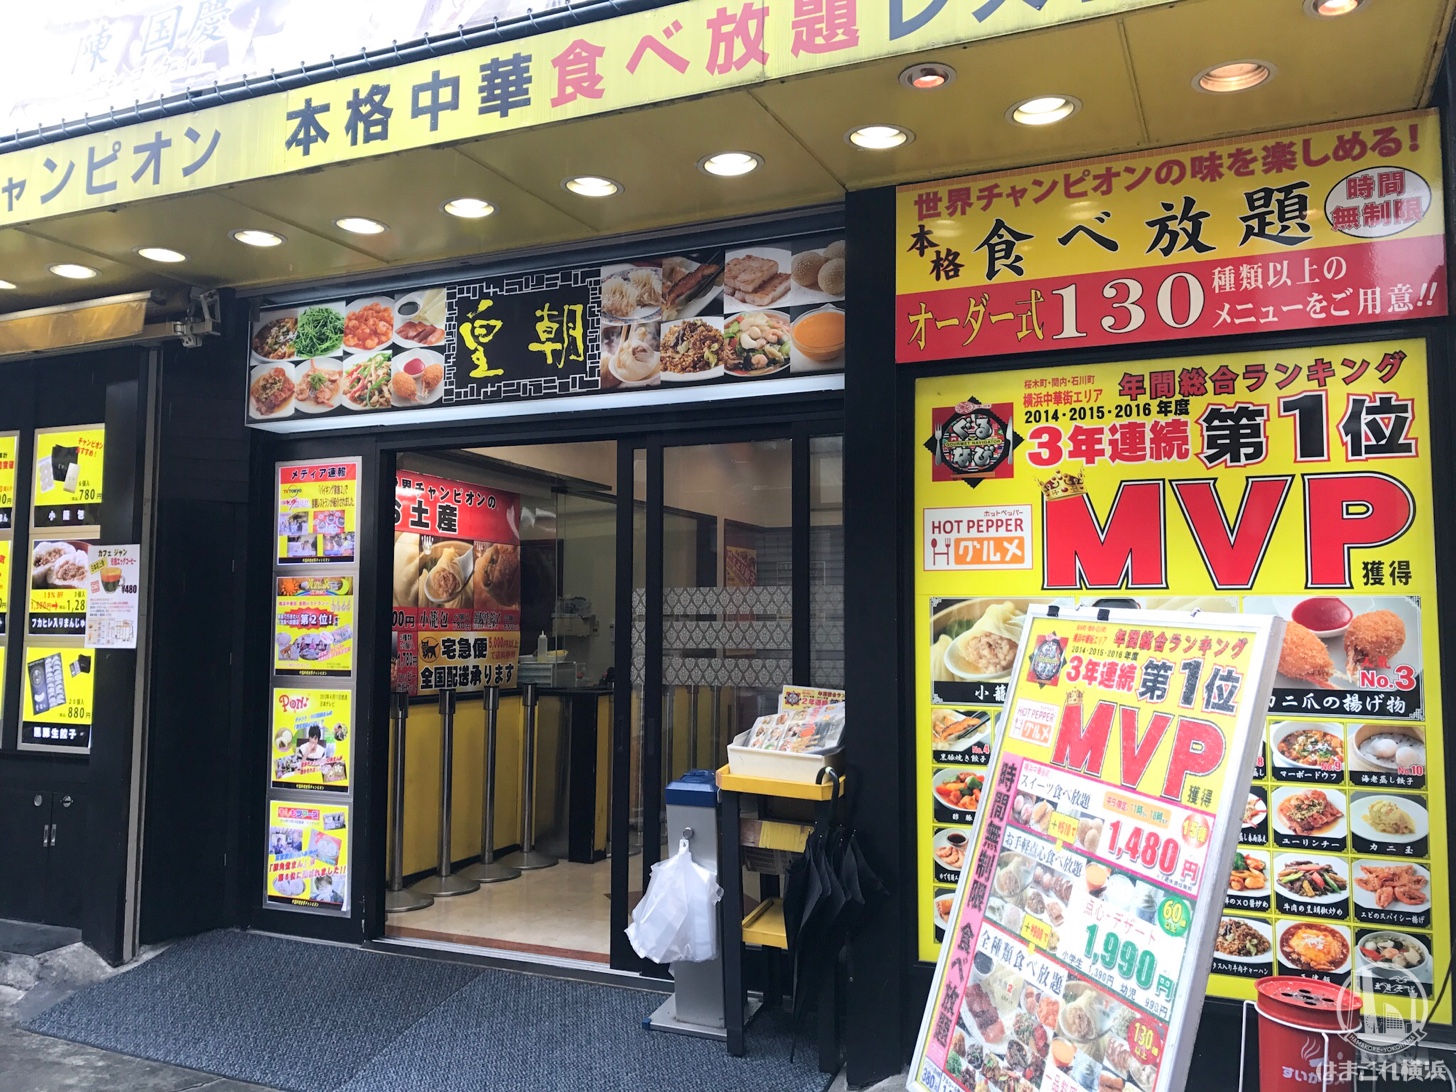 食べ放題を満喫しよう 横浜中華街おすすめの食べ放題店 ぶらりっこ ココロときめく東横お出かけ情報